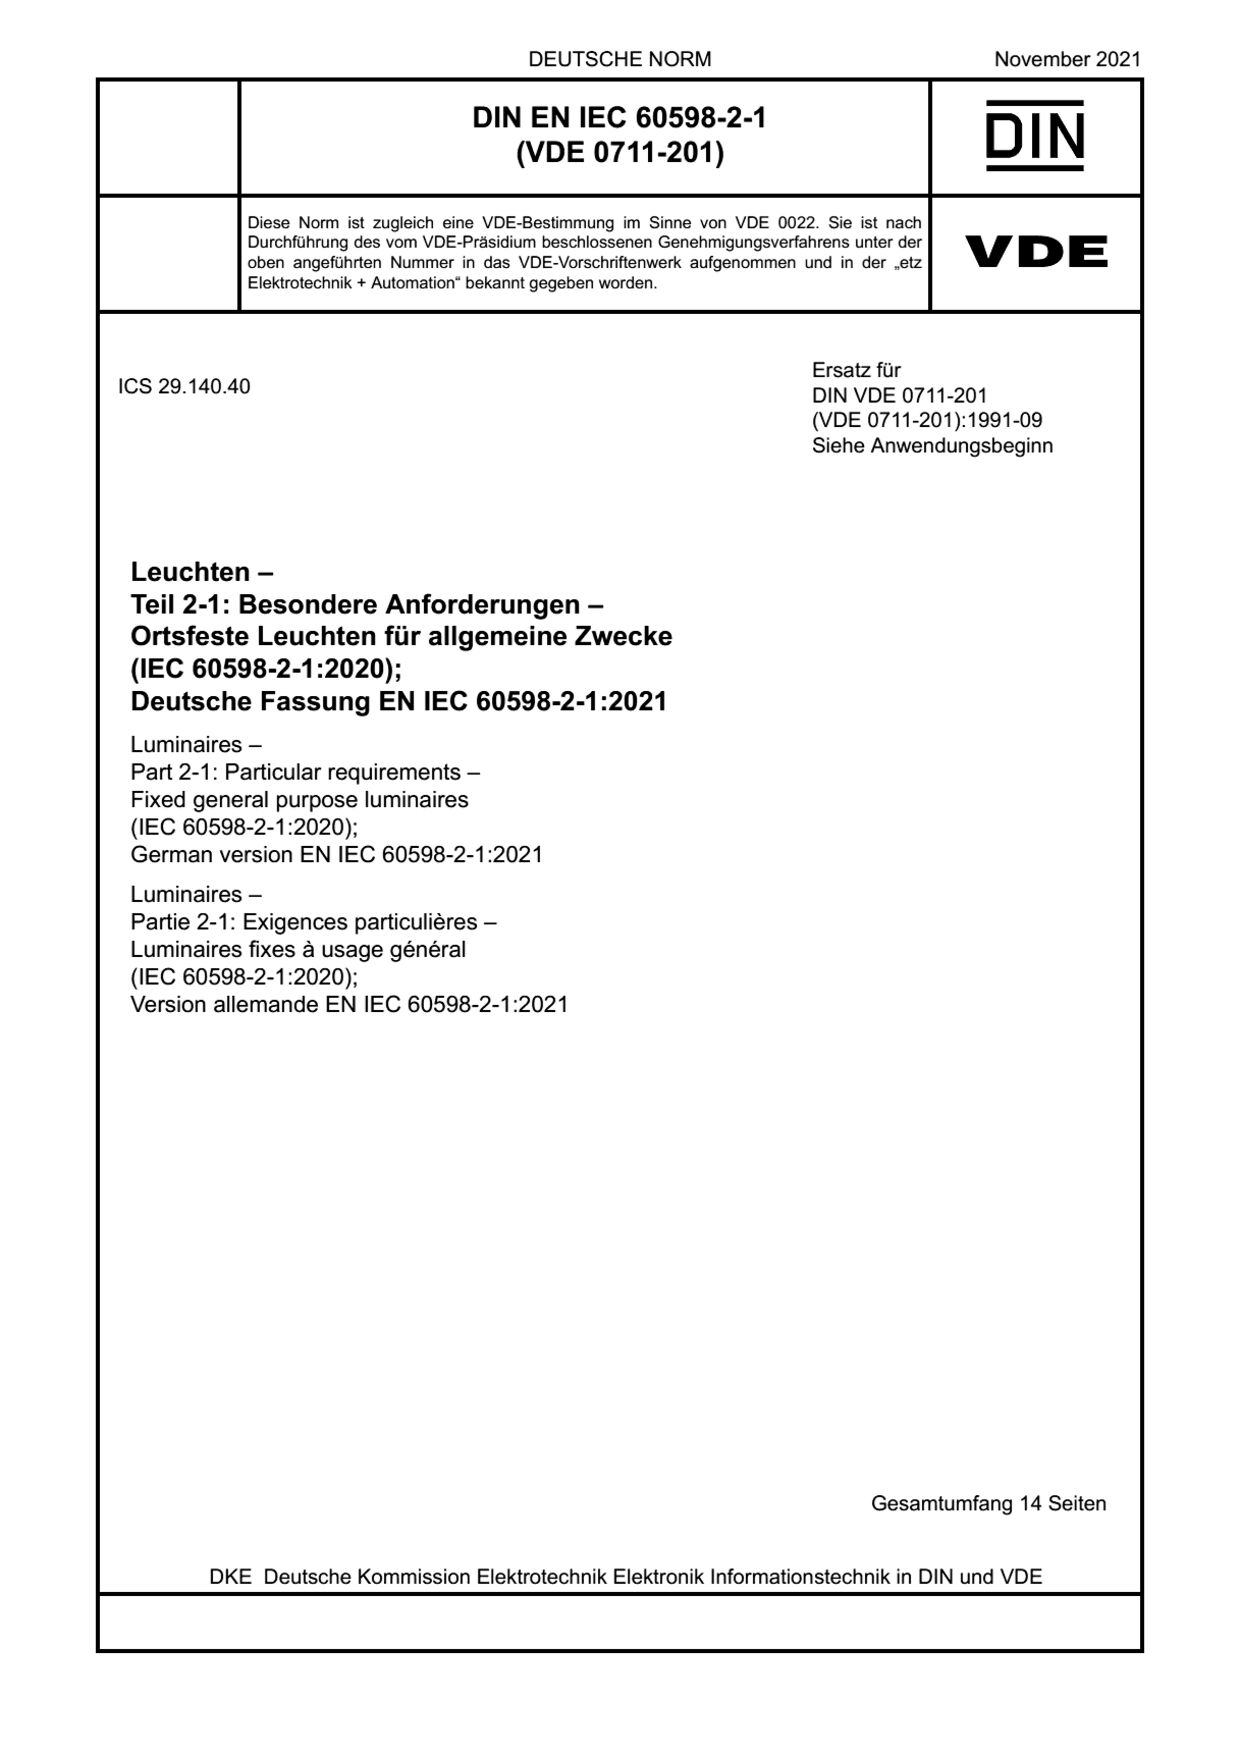 DIN EN IEC 60598-2-1:2021